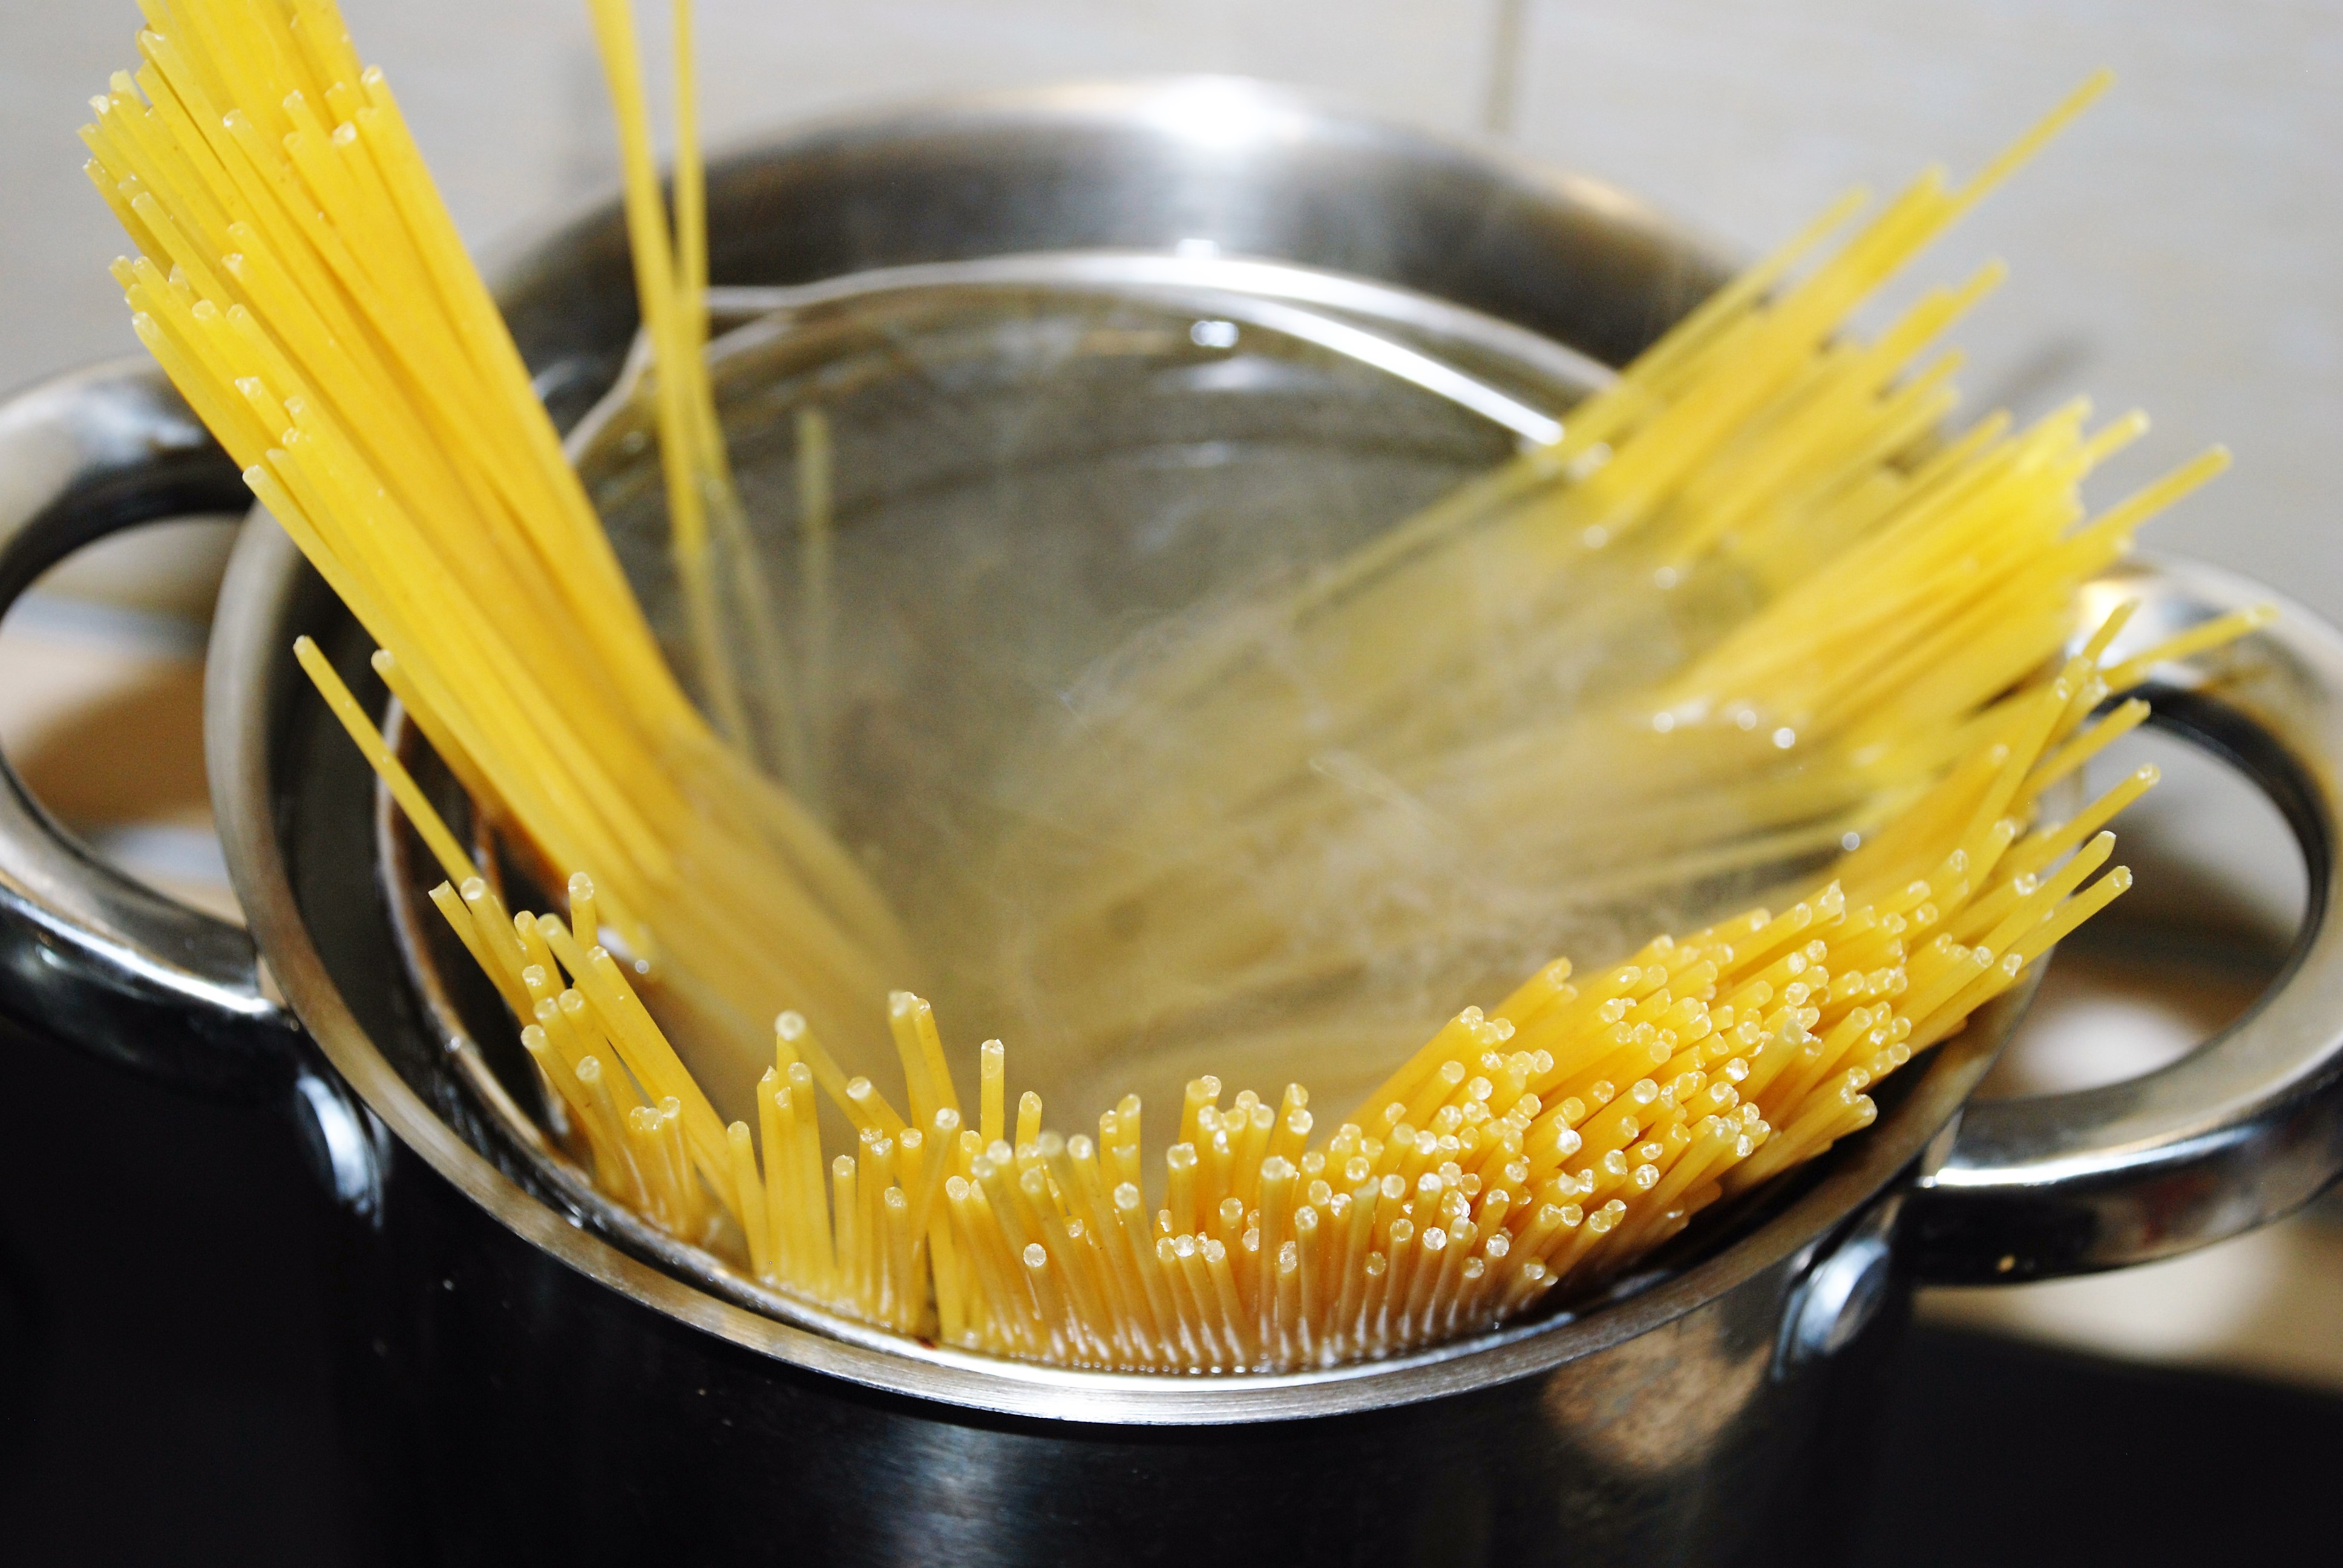 Отварить пасту или спагетти в подсоленной воде согласно инструкциям на упаковке